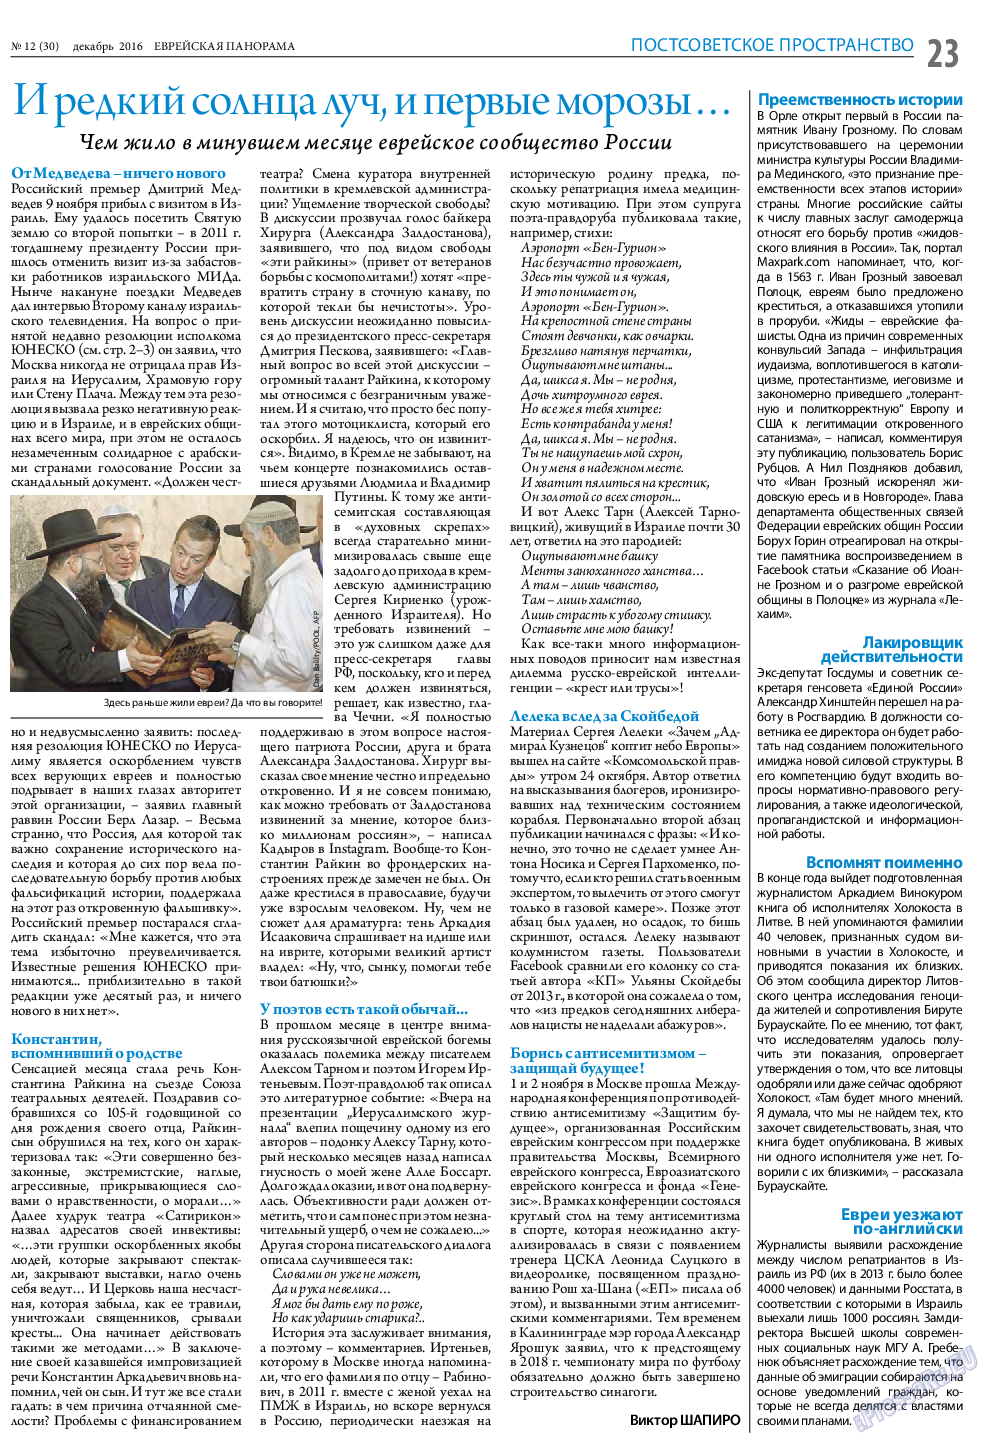 Еврейская панорама (газета). 2016 год, номер 12, стр. 23